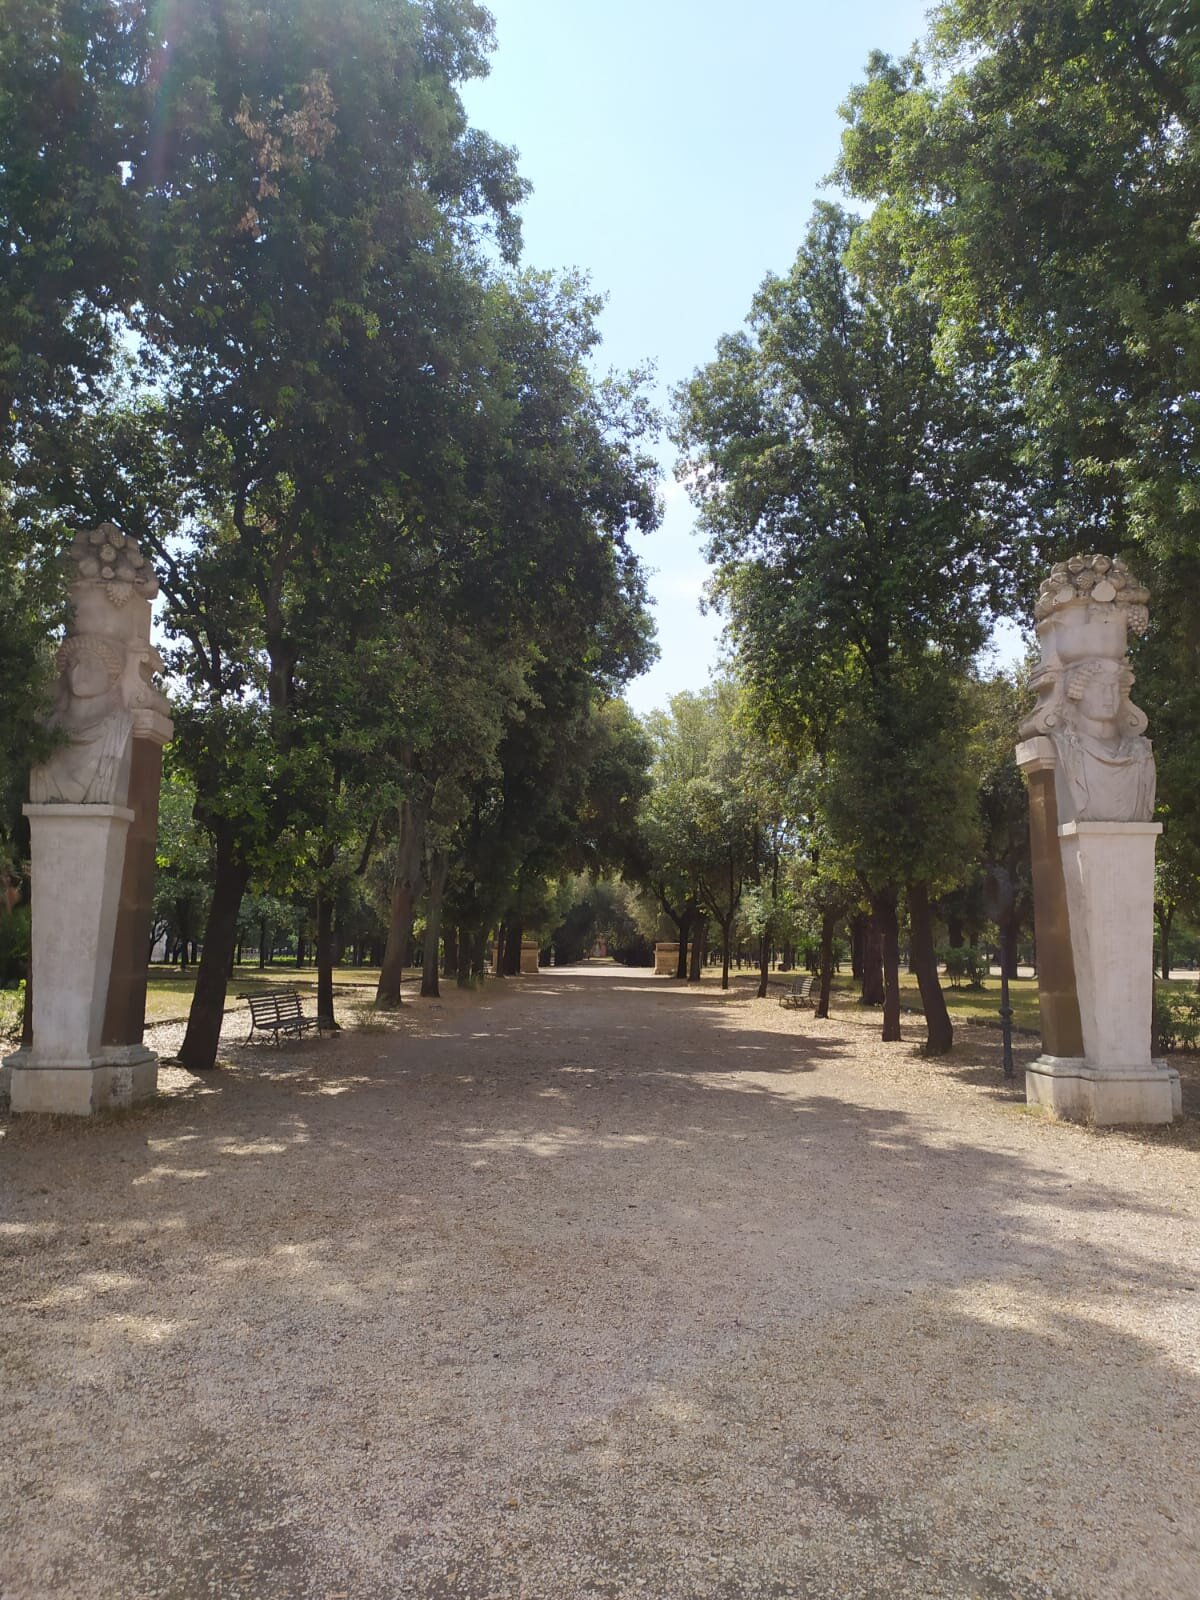 Villa Borghese-Parco dei Daini Viale.jpg